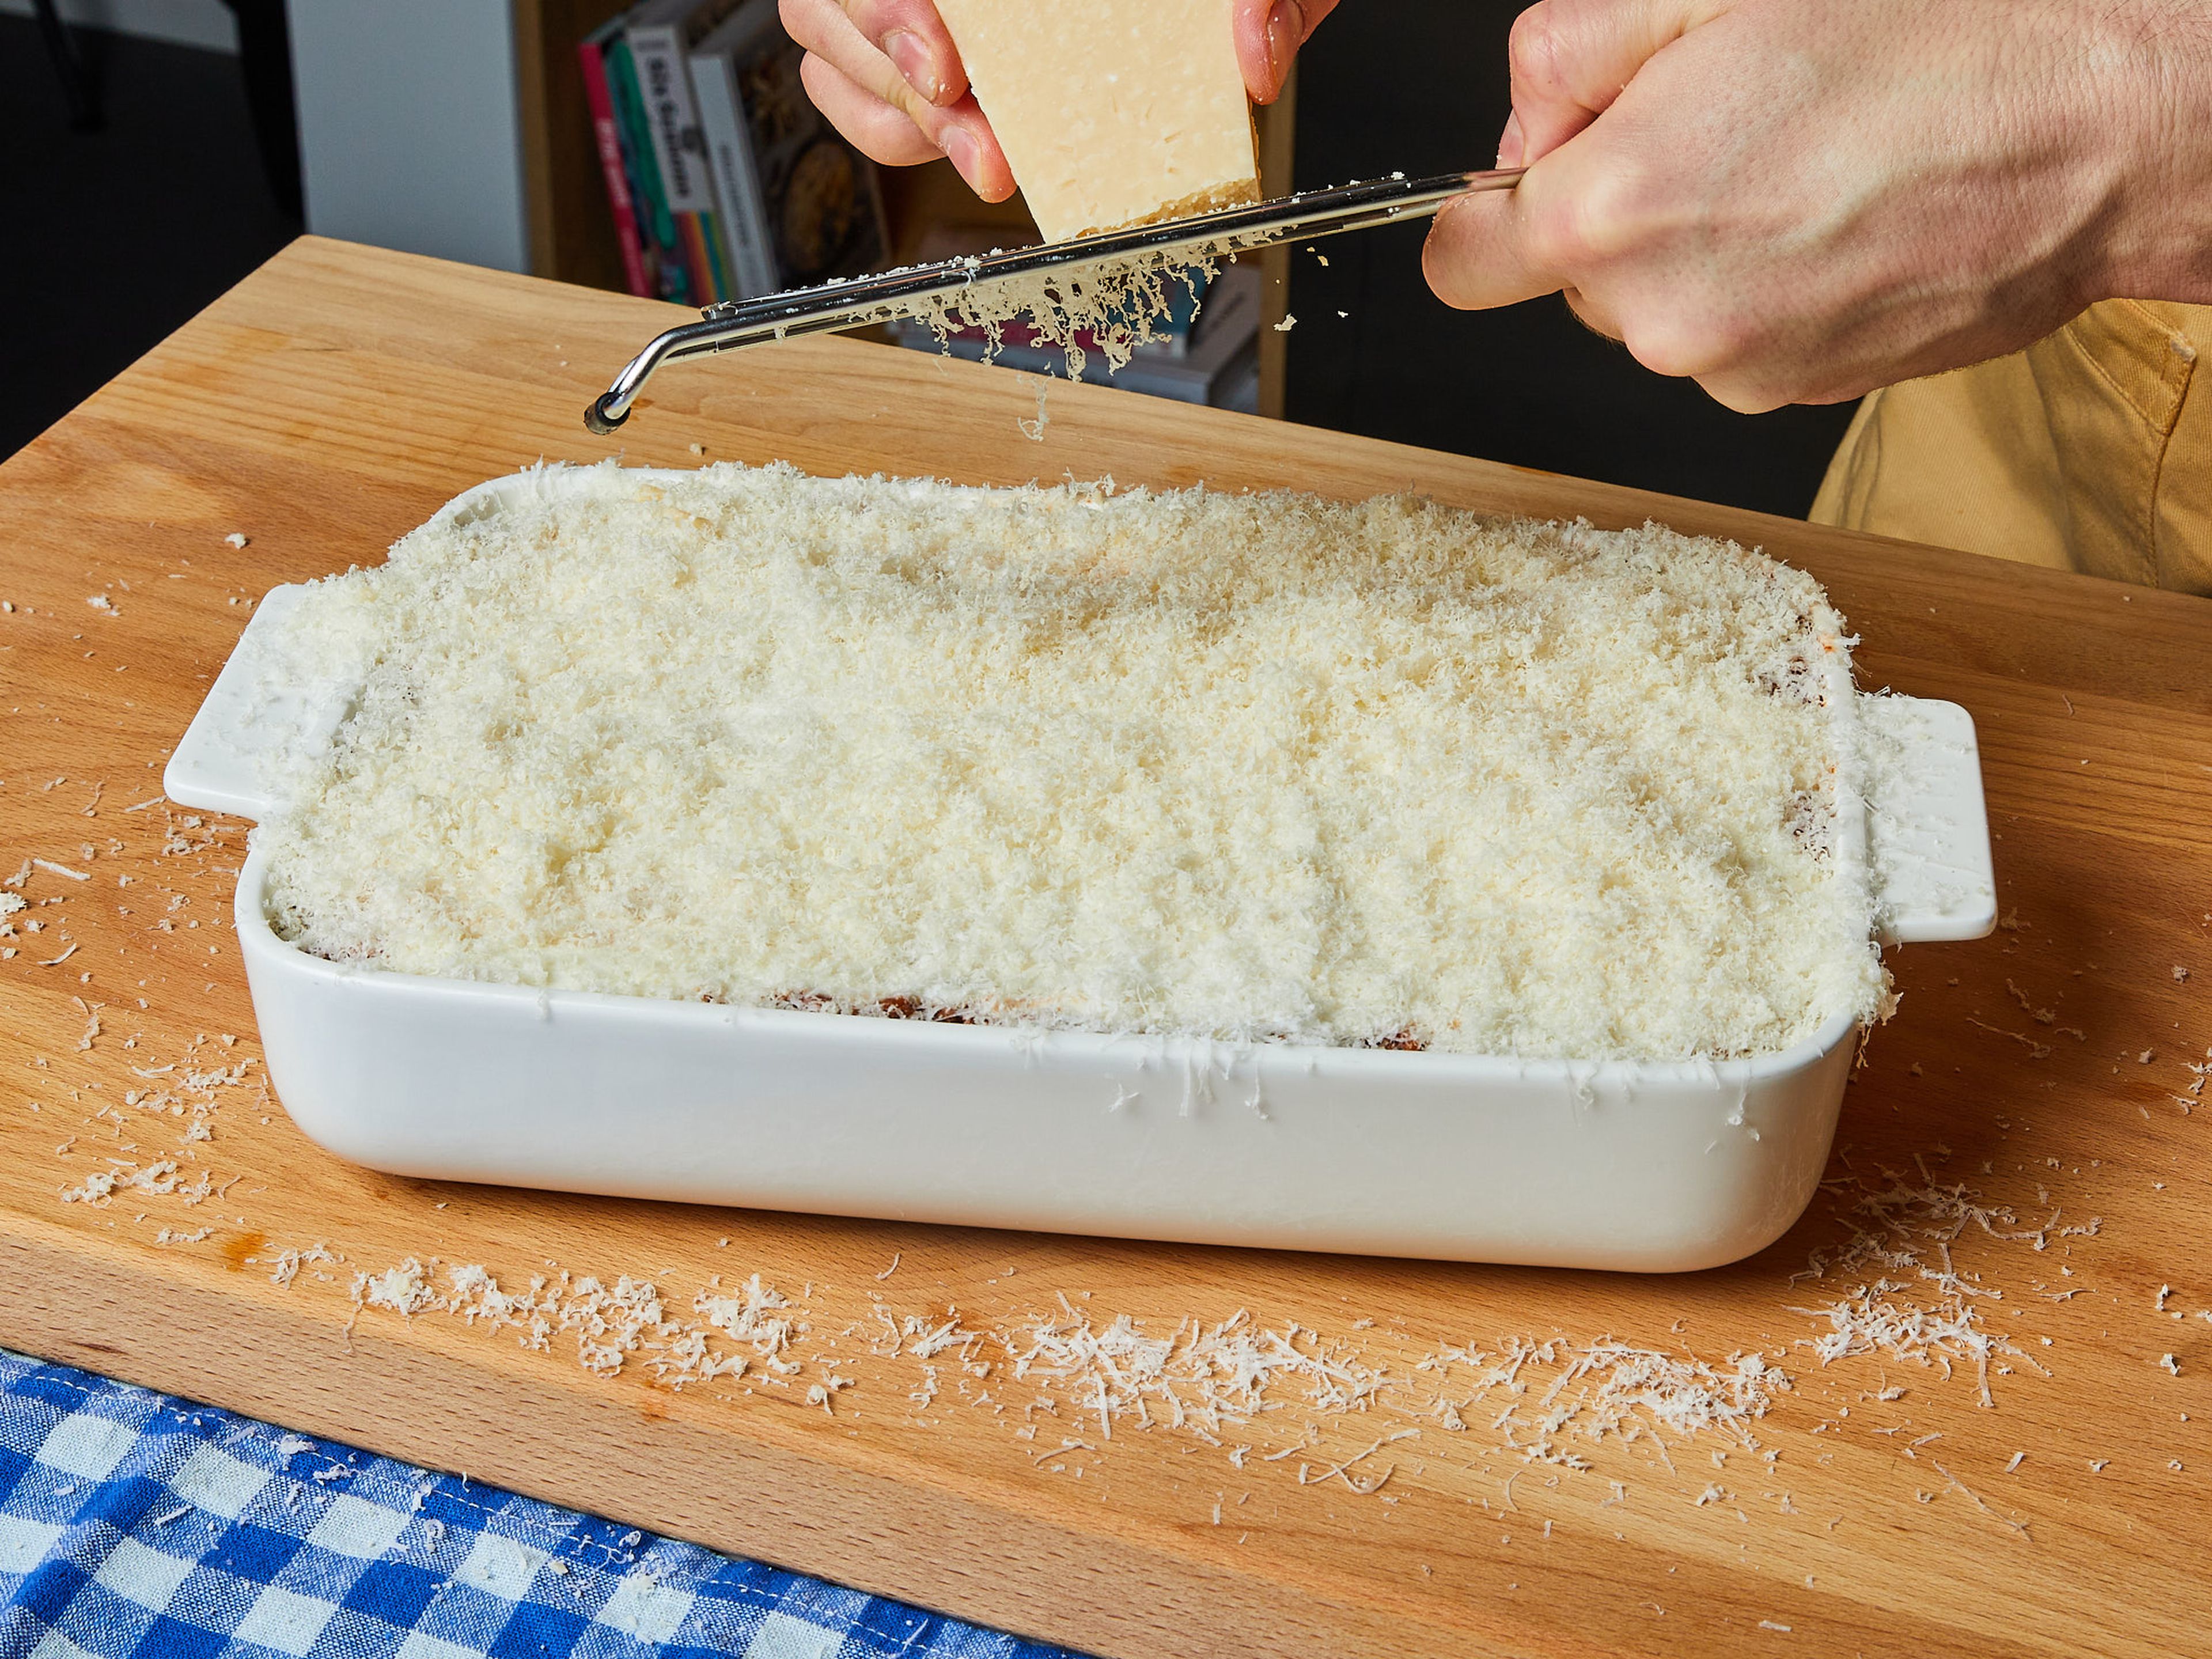 Den Parmesan über die letzte Schicht reiben. Die Lasagne auf der mittleren Schiene in den vorgeheizten Ofen schieben und ca. 30-40 Min. backen, bis die Oberfläche goldbraun ist. In der heißen Auflaufform servieren.